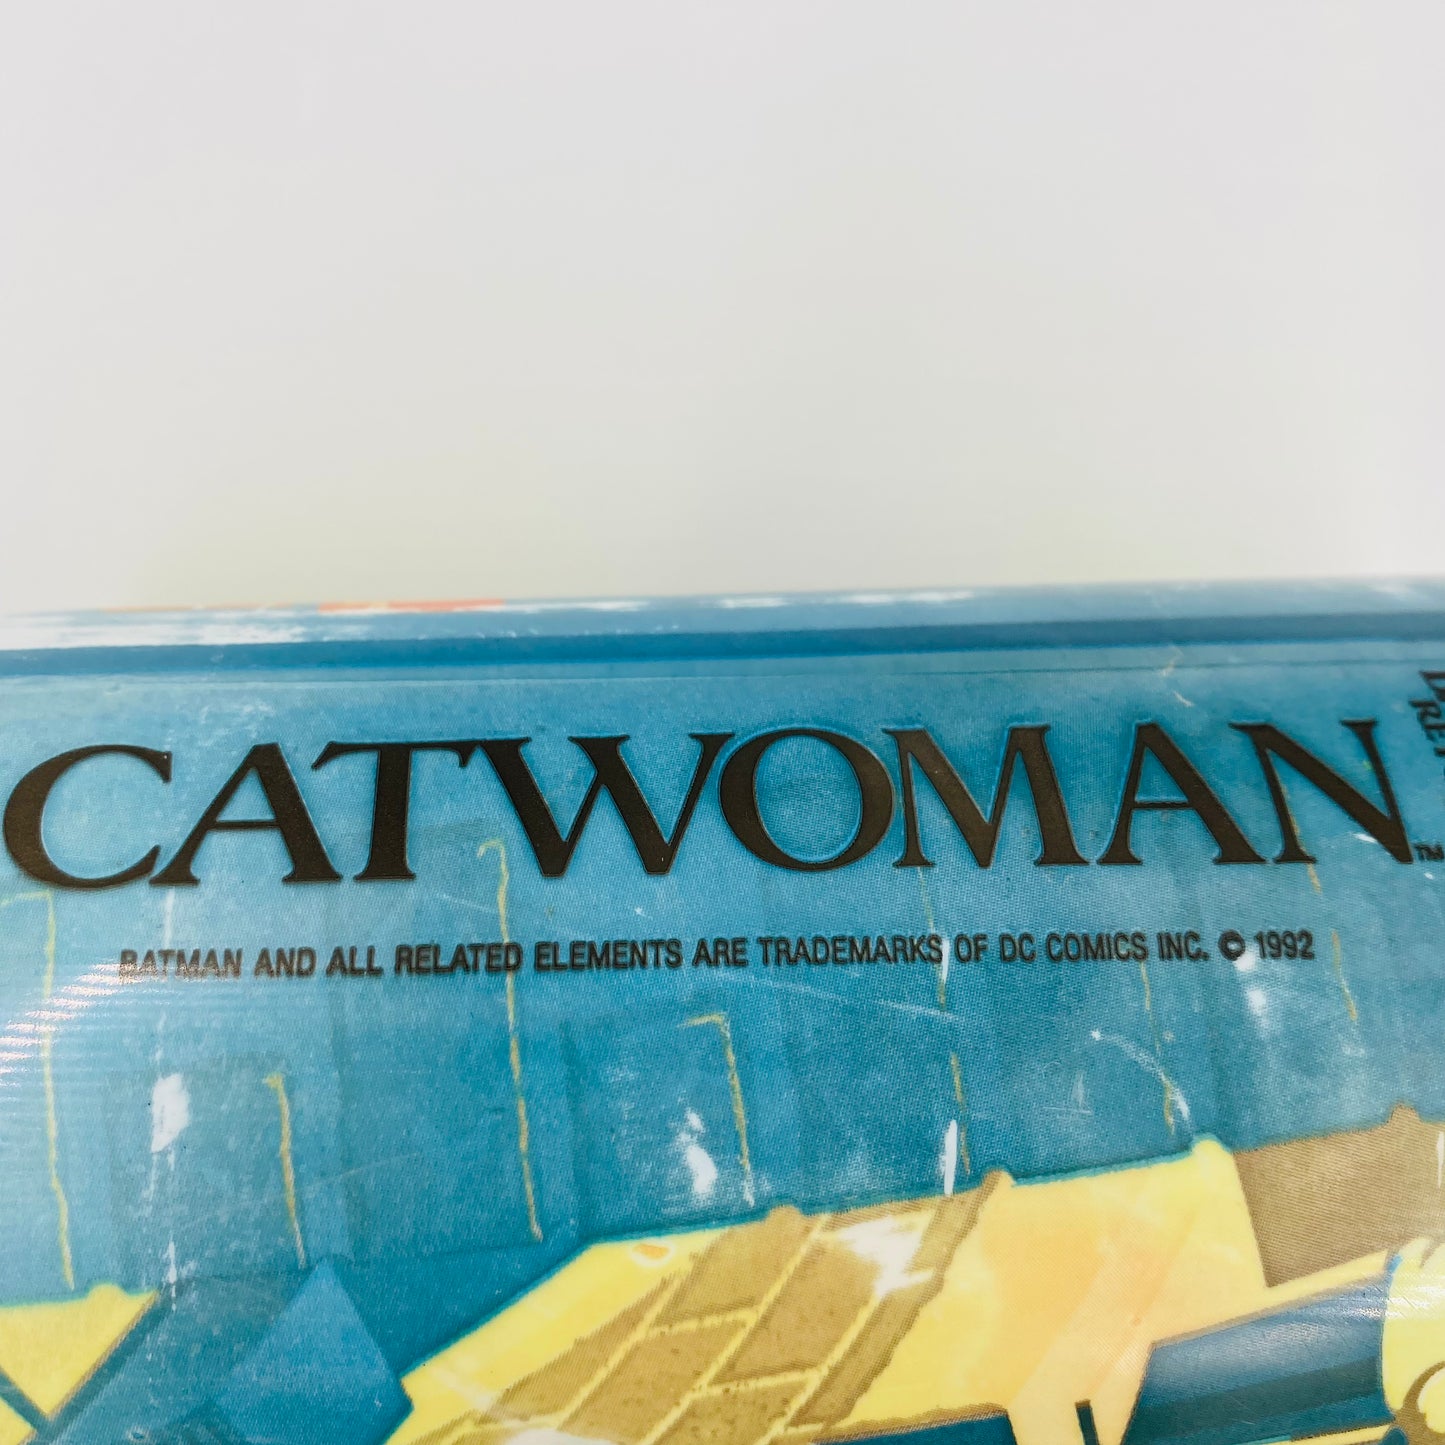 Batman Returns Catwoman 32oz plastic cup (1992) McDonald's